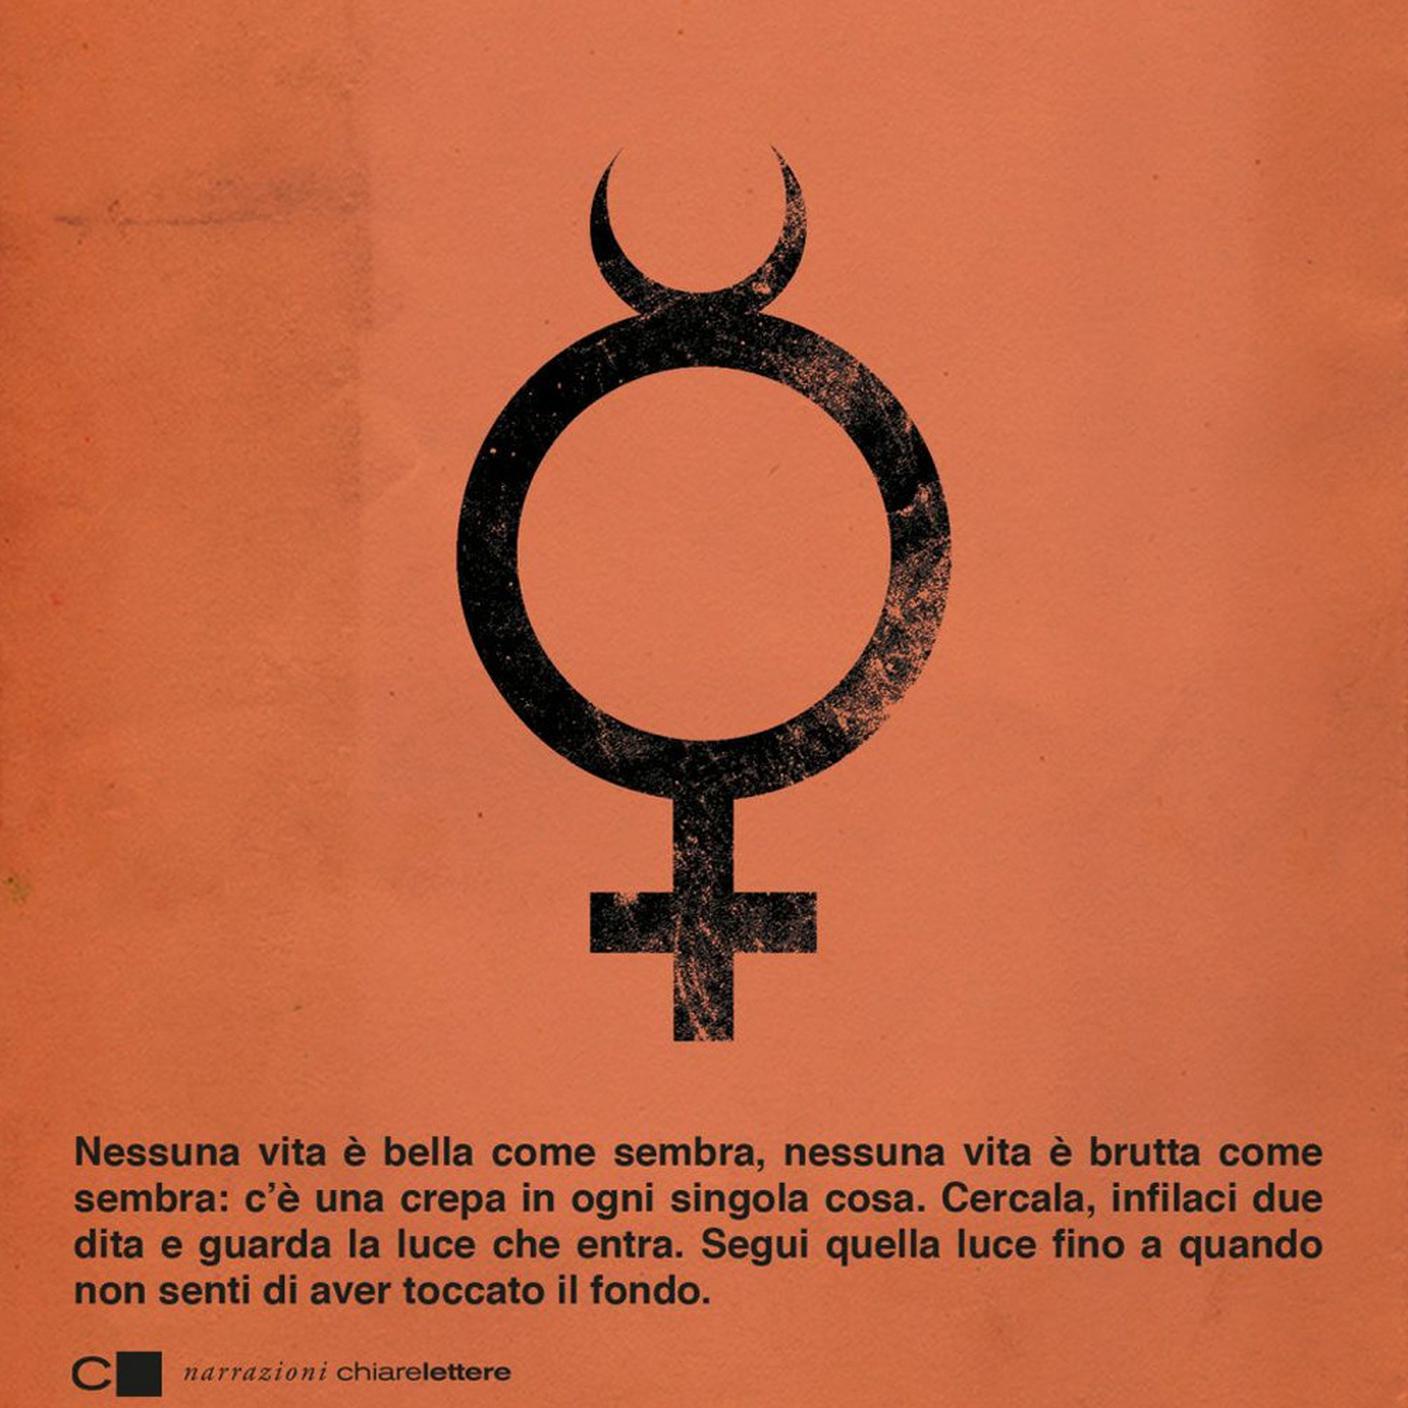 Violetta Bellocchio, "La festa nera", Chiarelettere (dettaglio copertina)